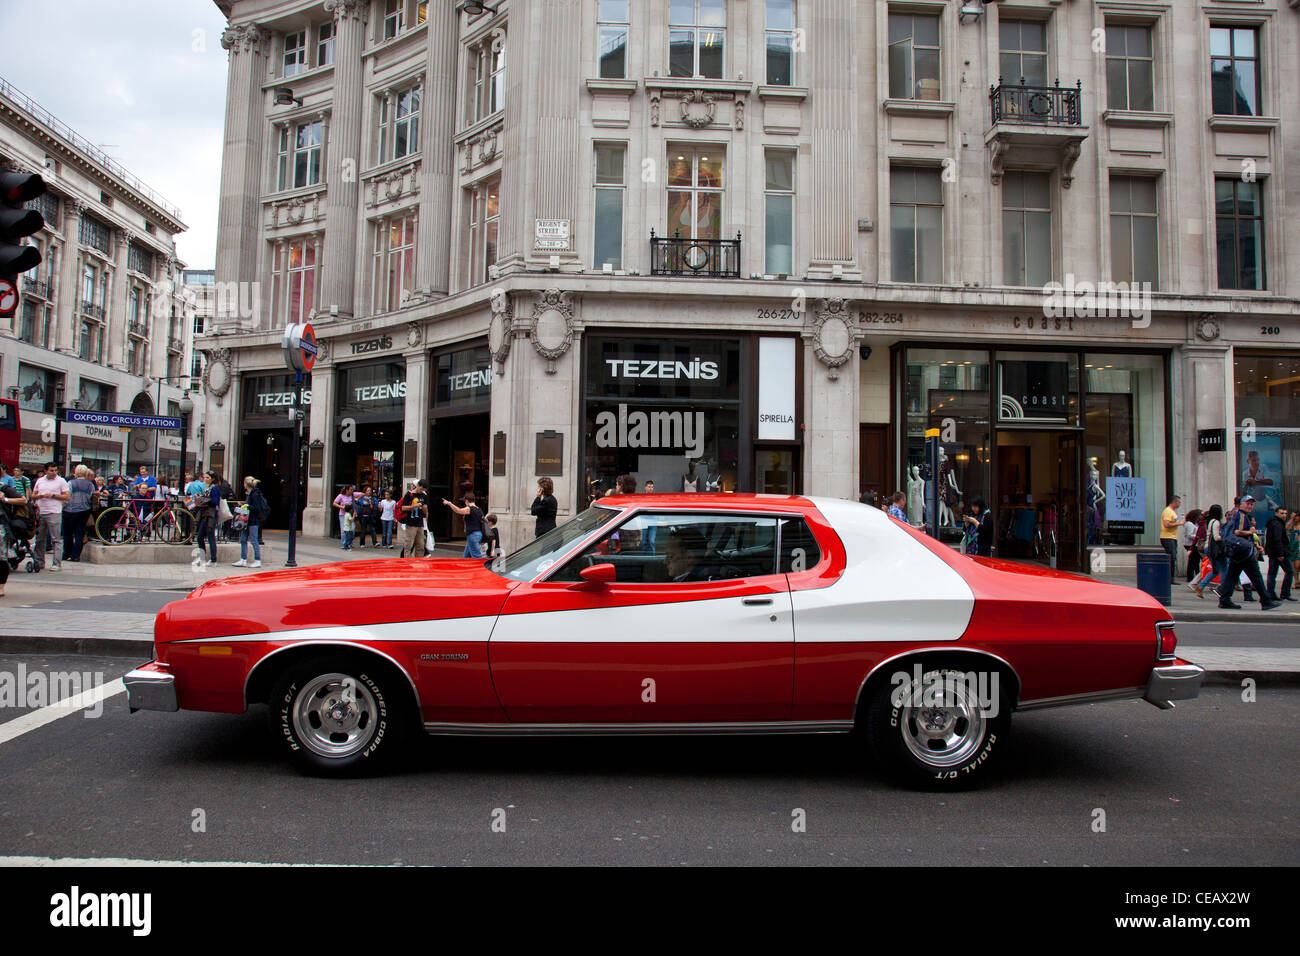 La célèbre voiture rouge utilisé dans le hit tv show et American Film Starsky et Hutch. La Ford Gran Torino. Londres, Royaume-Uni. Banque D'Images